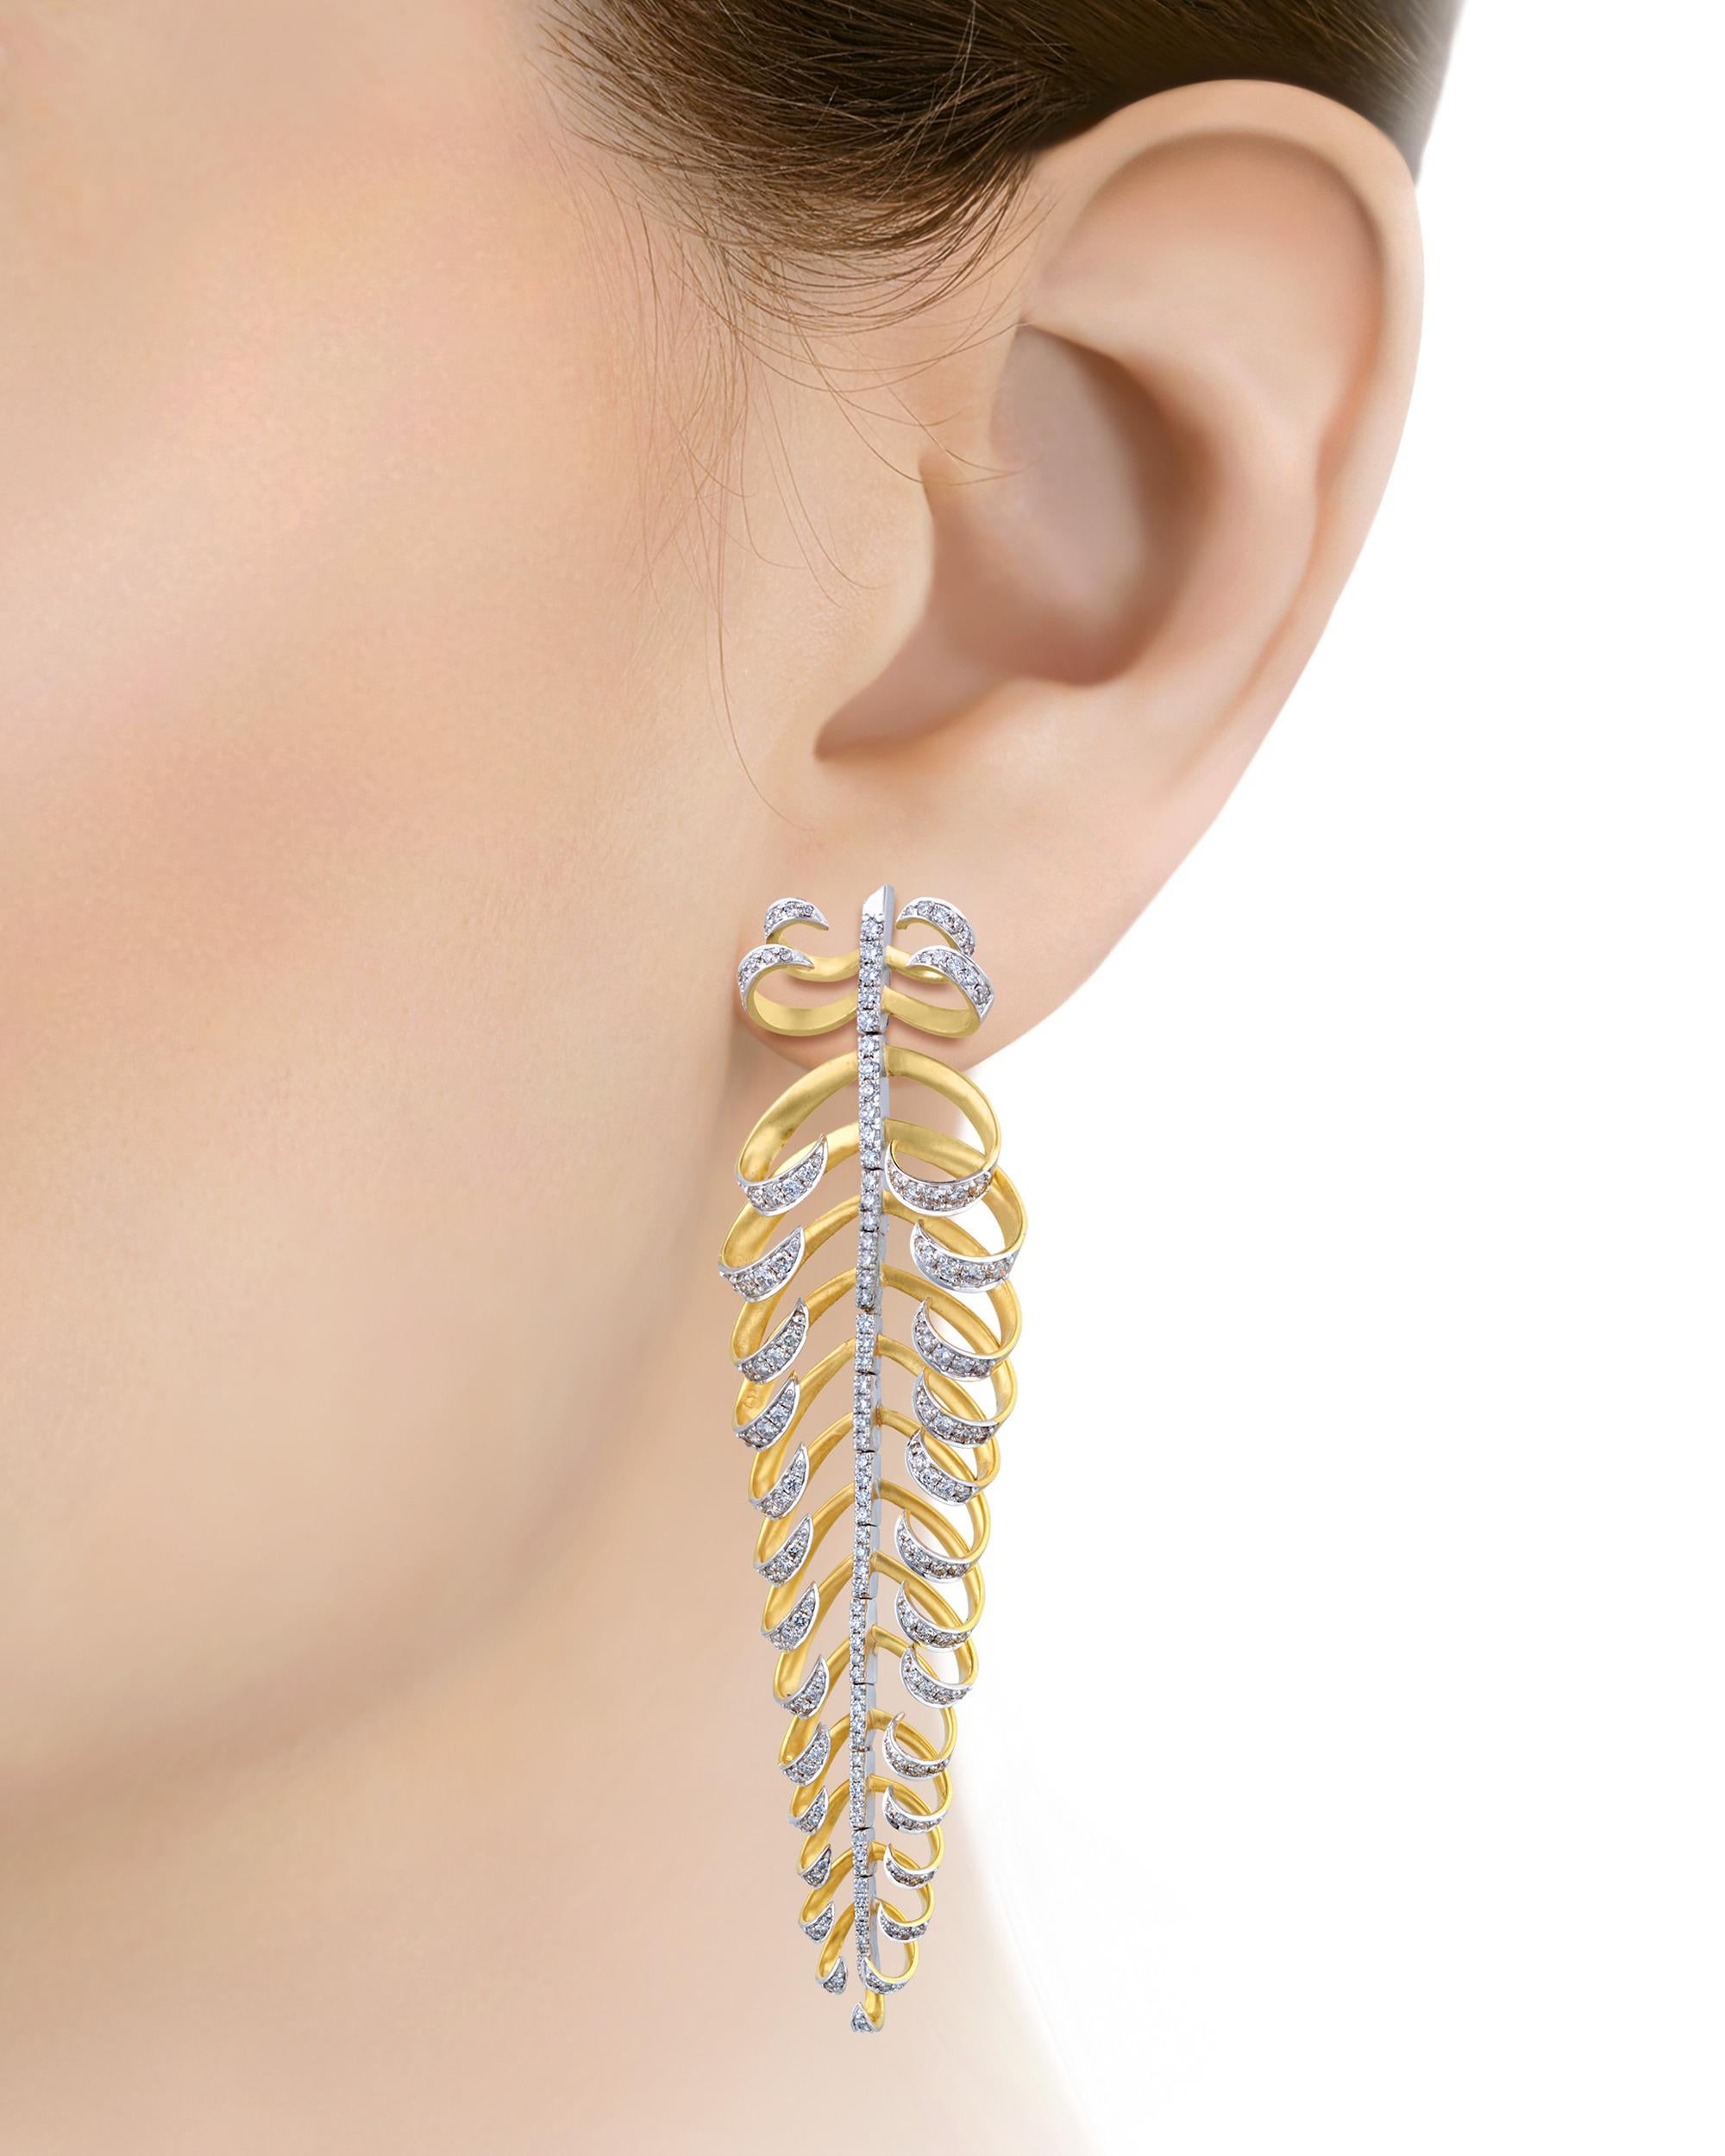 Dieses modische Paar Ohrringe aus Gold und Diamanten setzt ein markantes Zeichen. Jeder der kunstvollen blattförmigen Ohrringe ist fachmännisch aus glänzendem 18-karätigem Gold gefertigt und trägt eine schillernde Reihe weißer Diamanten von